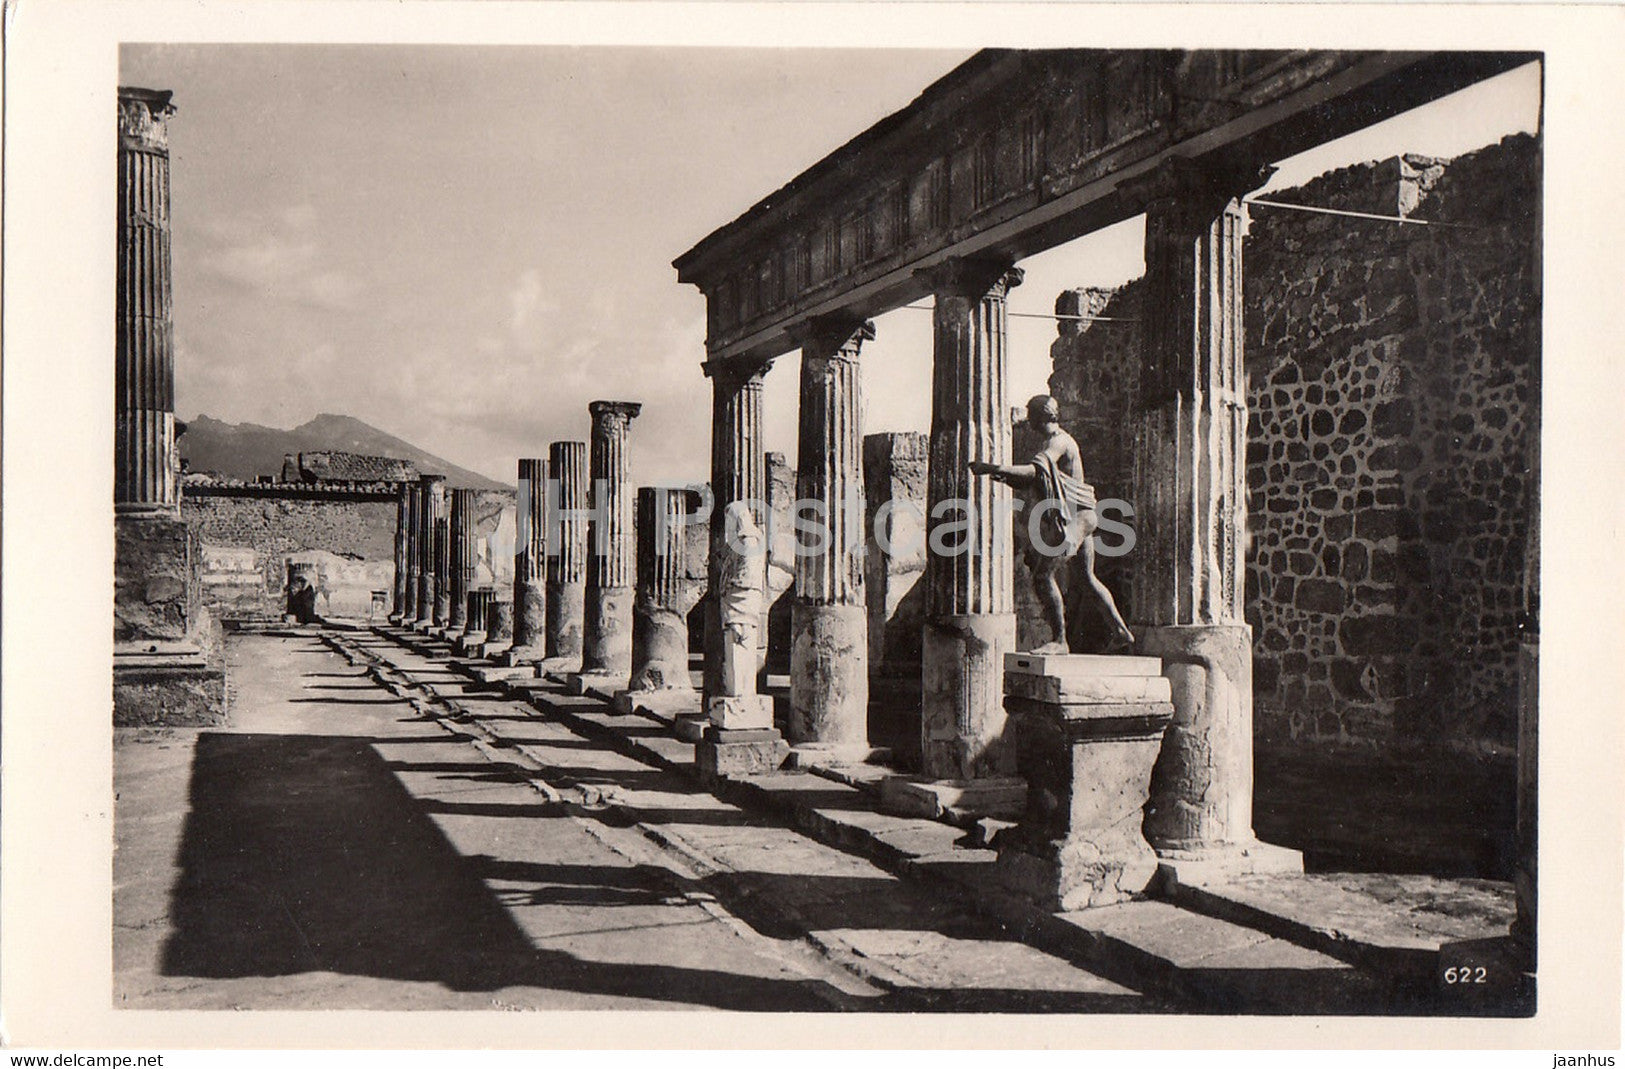 Napoli Pompei - Pompeii - Naples - Tempel des Apollo - 622 - ancient - old postcard - Italy - unused - JH Postcards